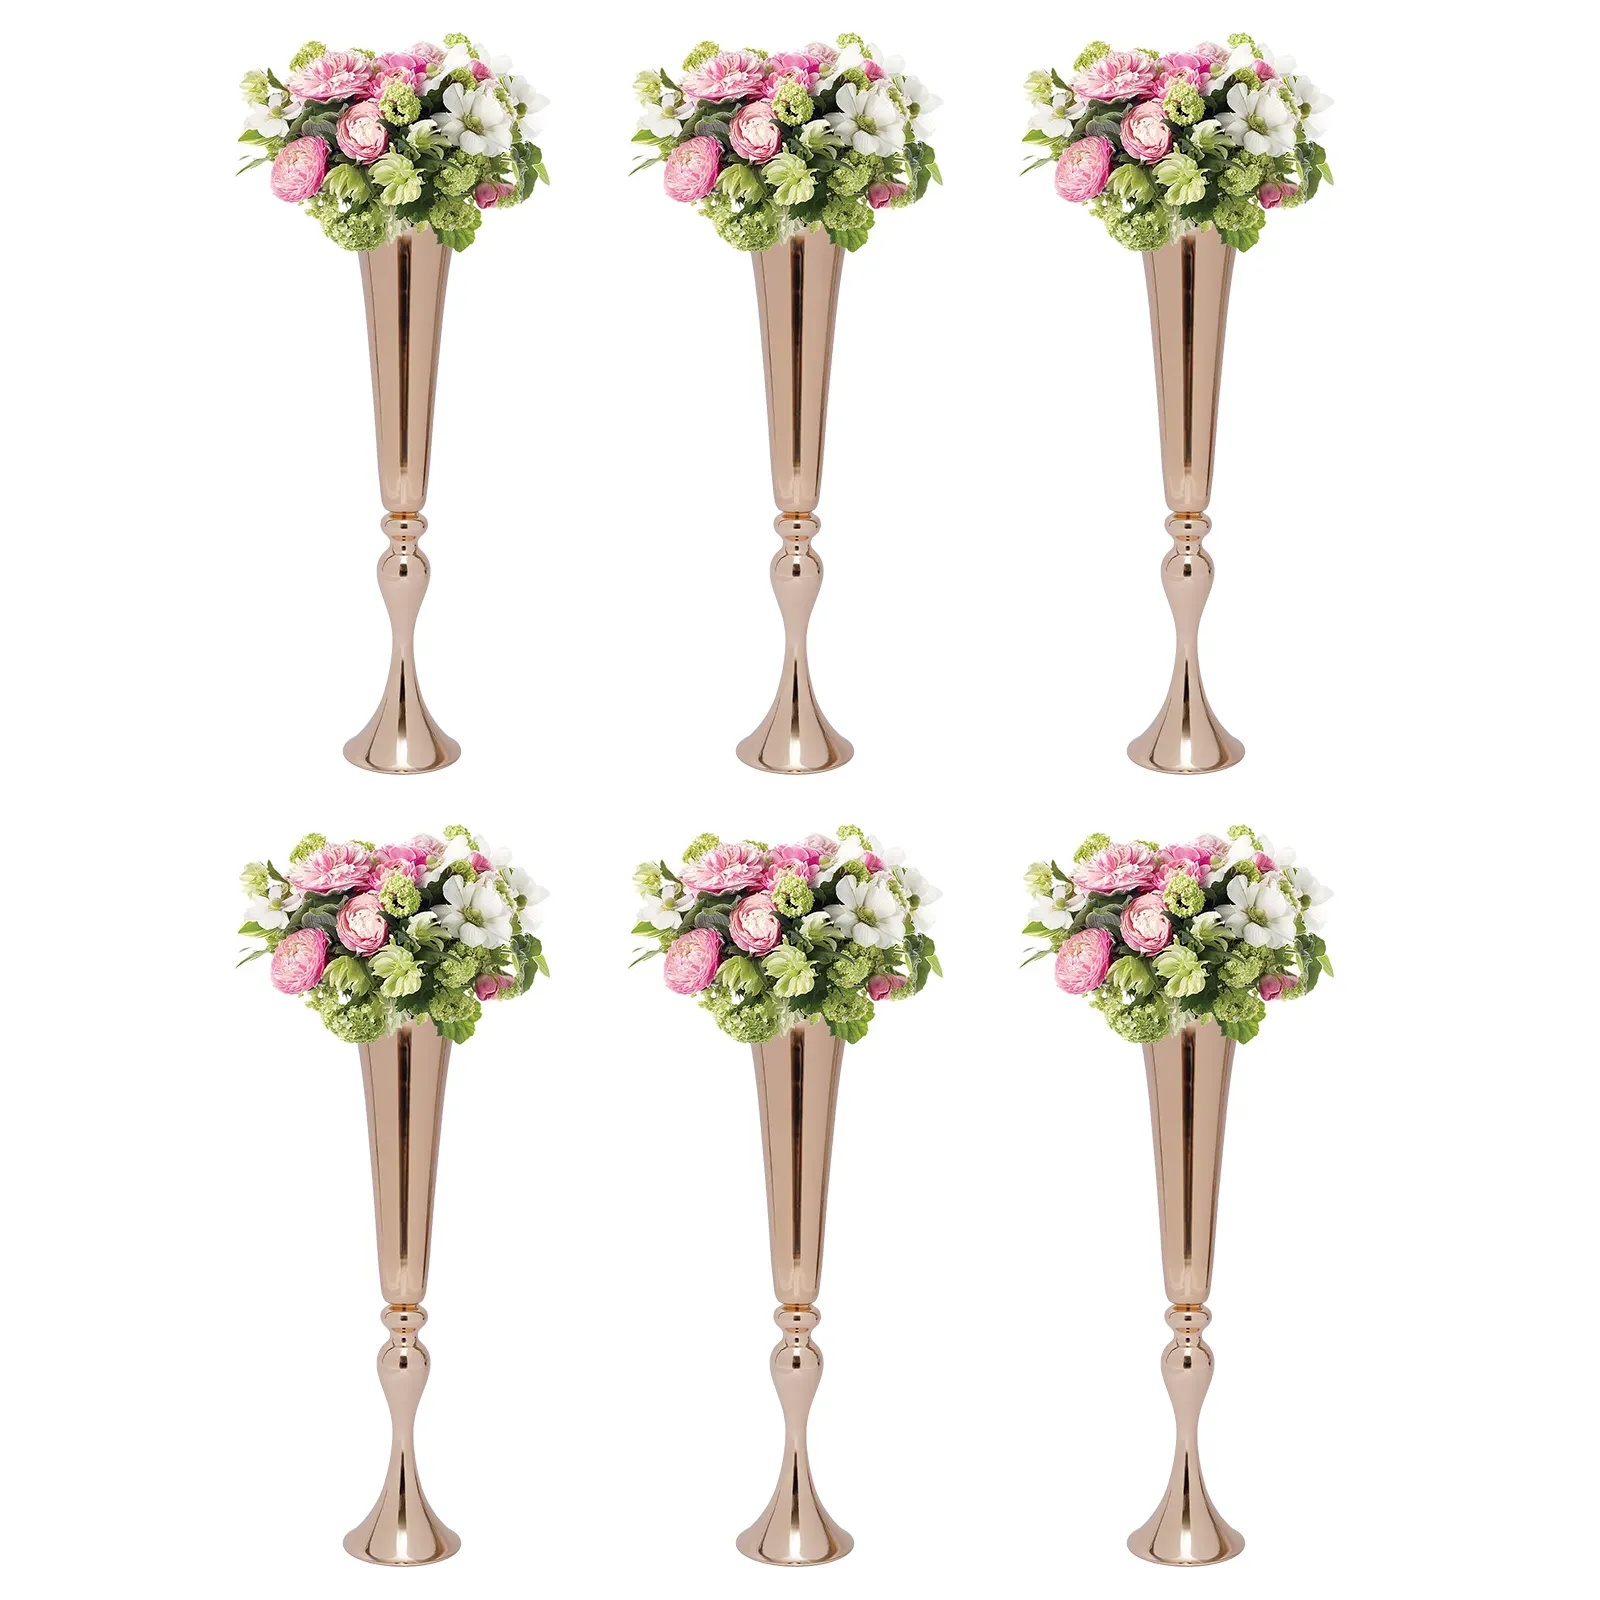 décoration mariage trompette en métal vases bureau trompette en métal centres de table vase zone d'accueil guide routier porte-fleurs hauteur accessoires de mariage